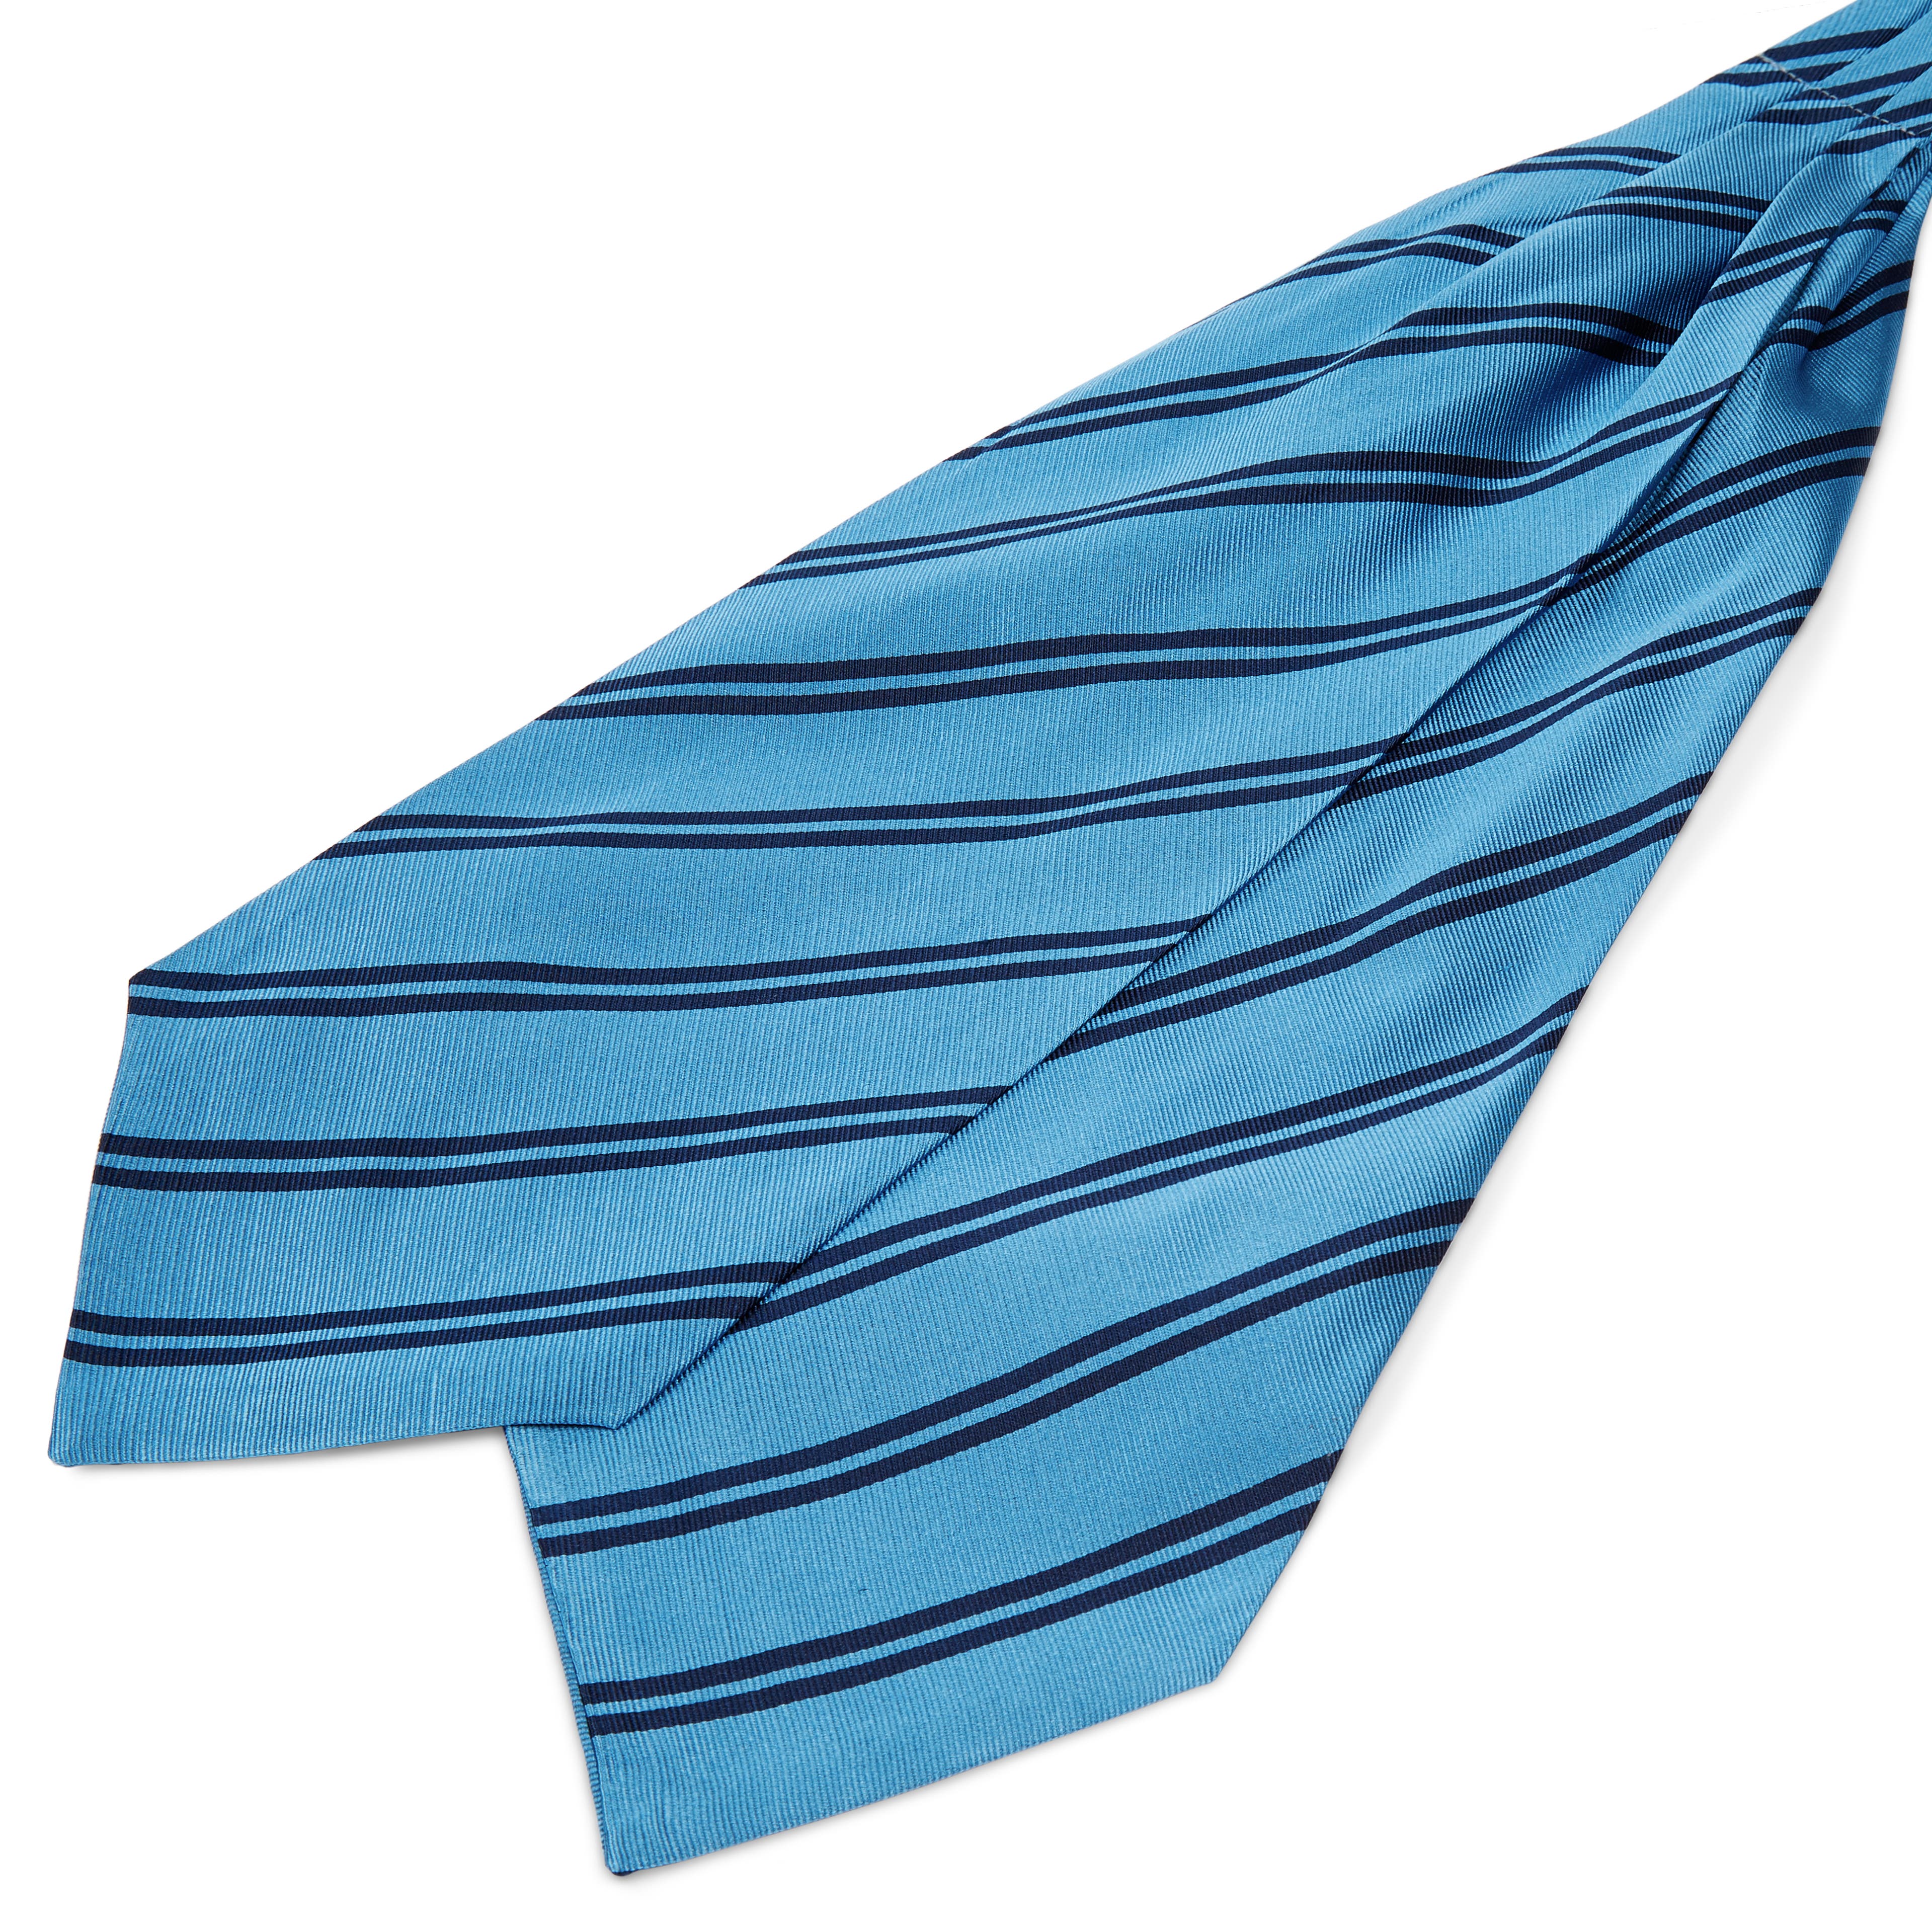 Cravatta ascot in seta azzurra con doppie righe blu navy